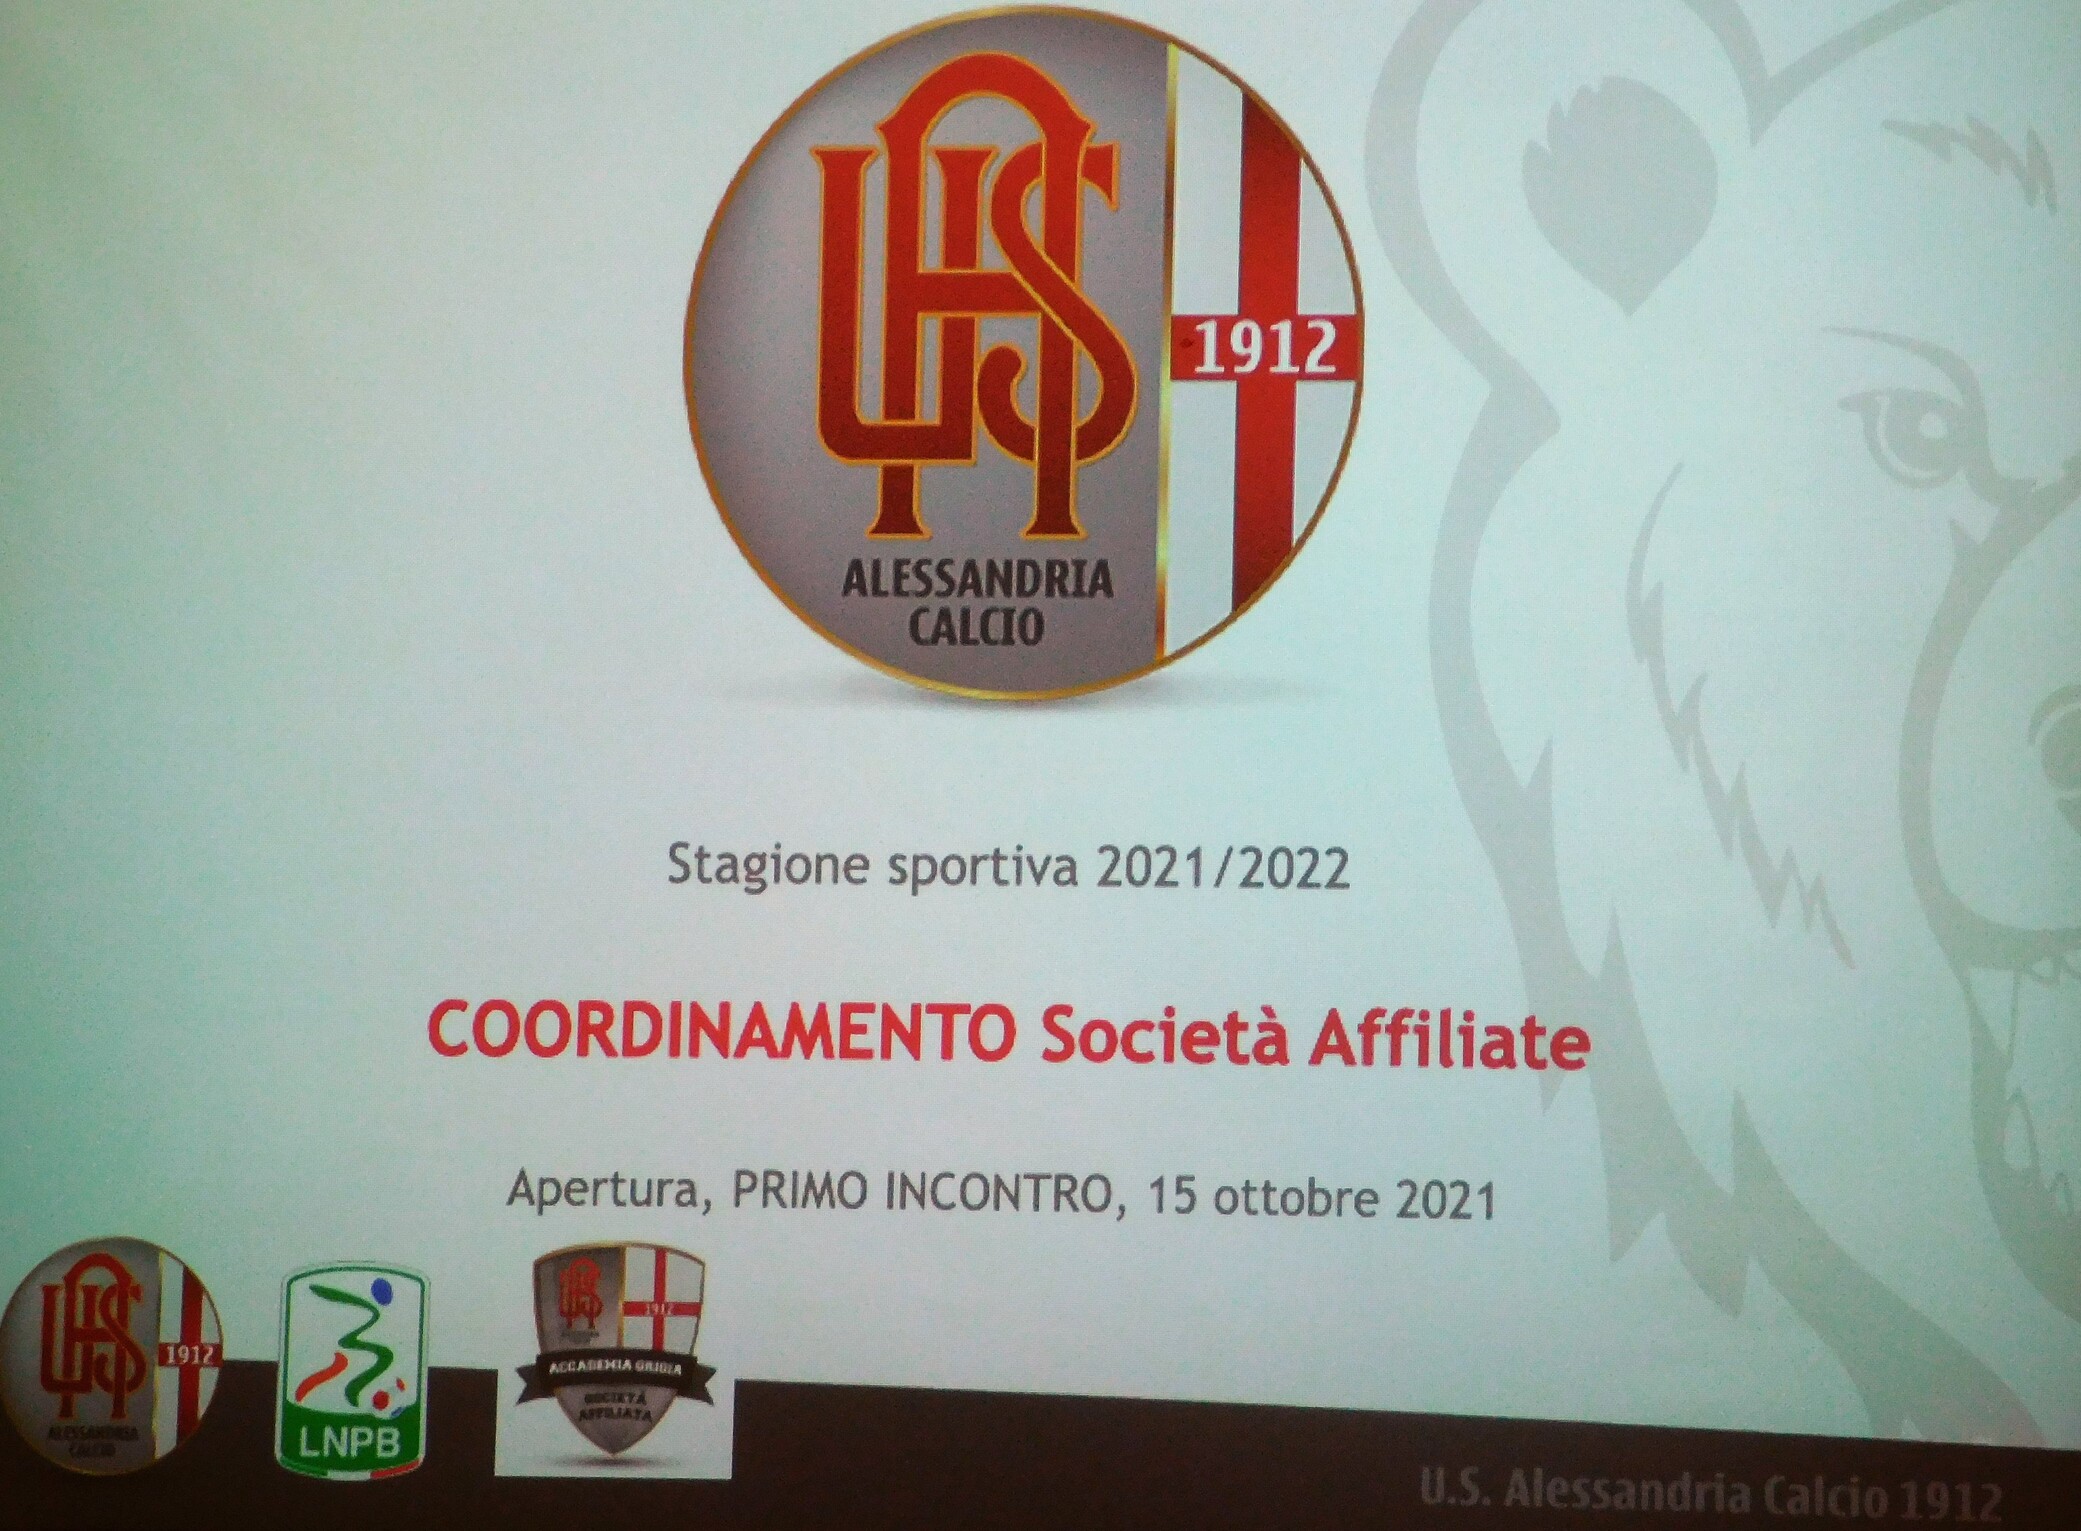 Incontro di apertura per le società alle affiliate all’Alessandria Calcio.